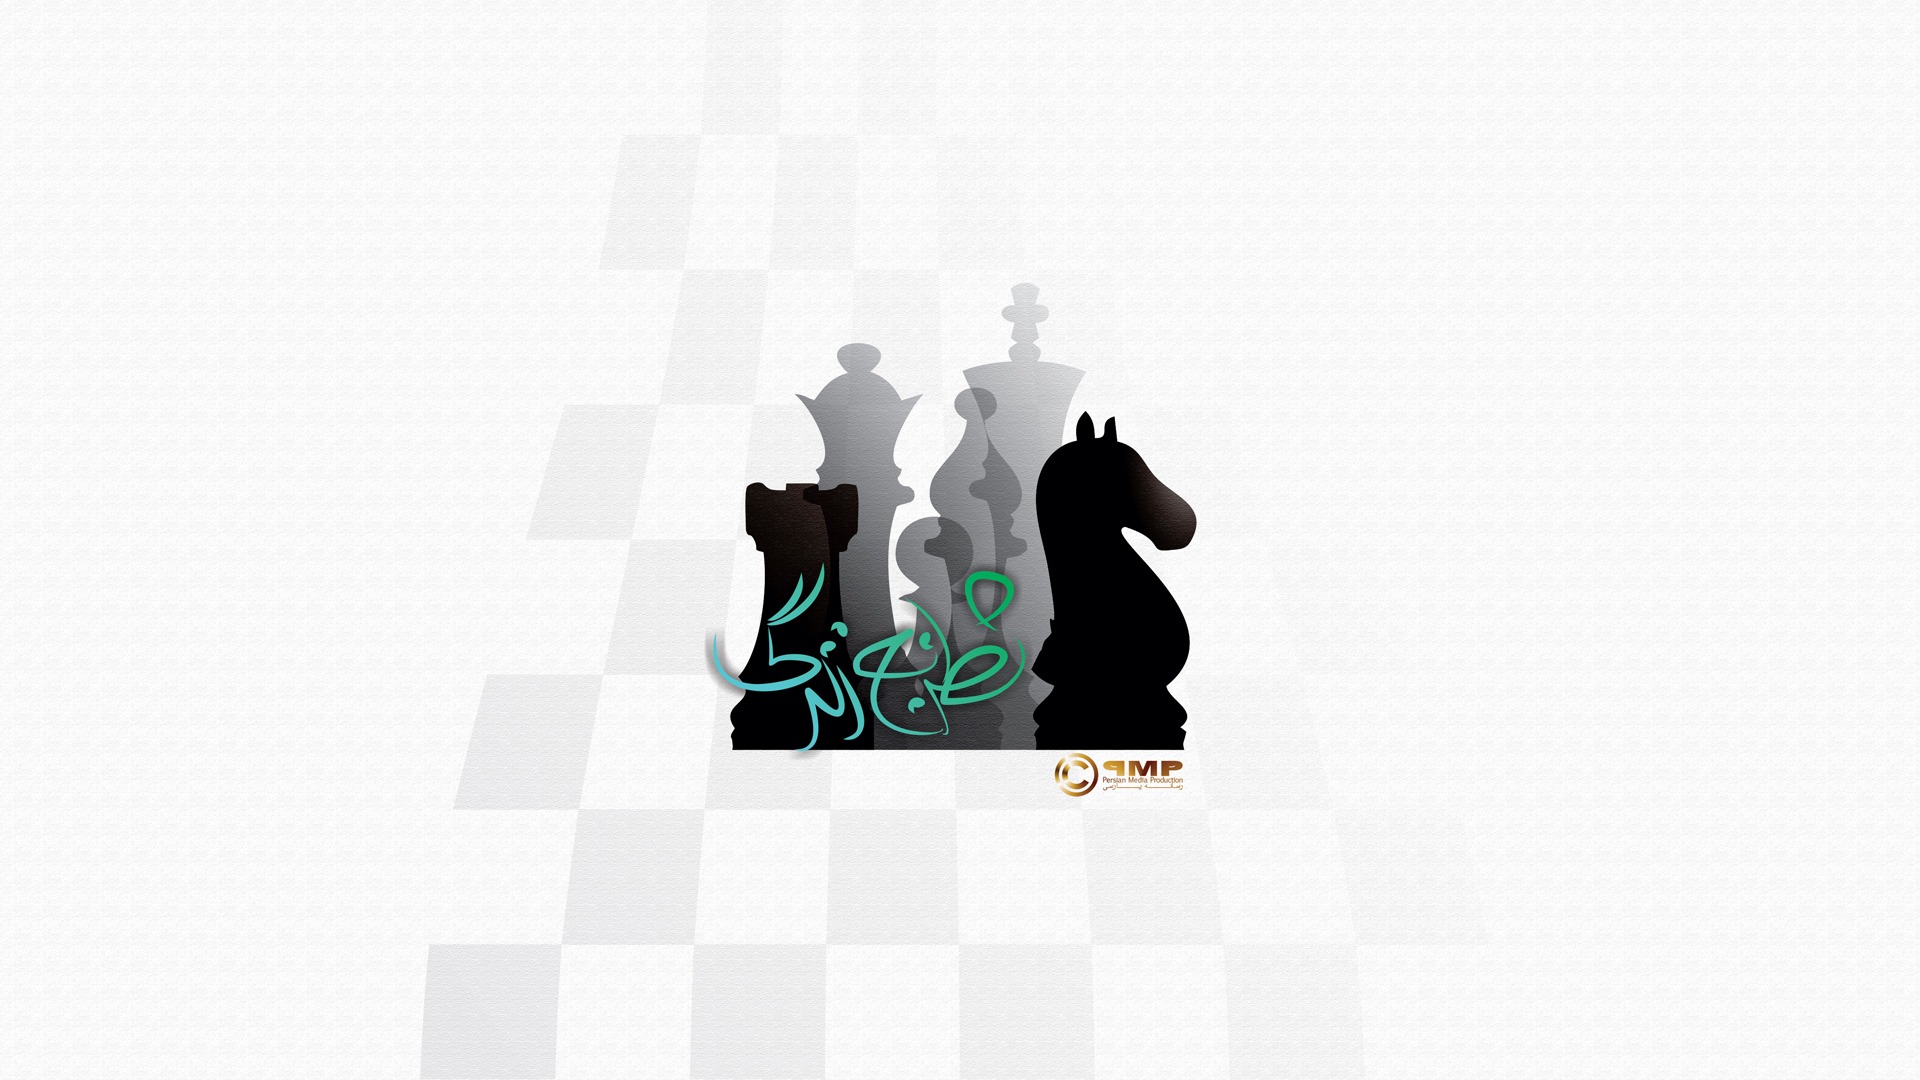 شطرنج زندگی